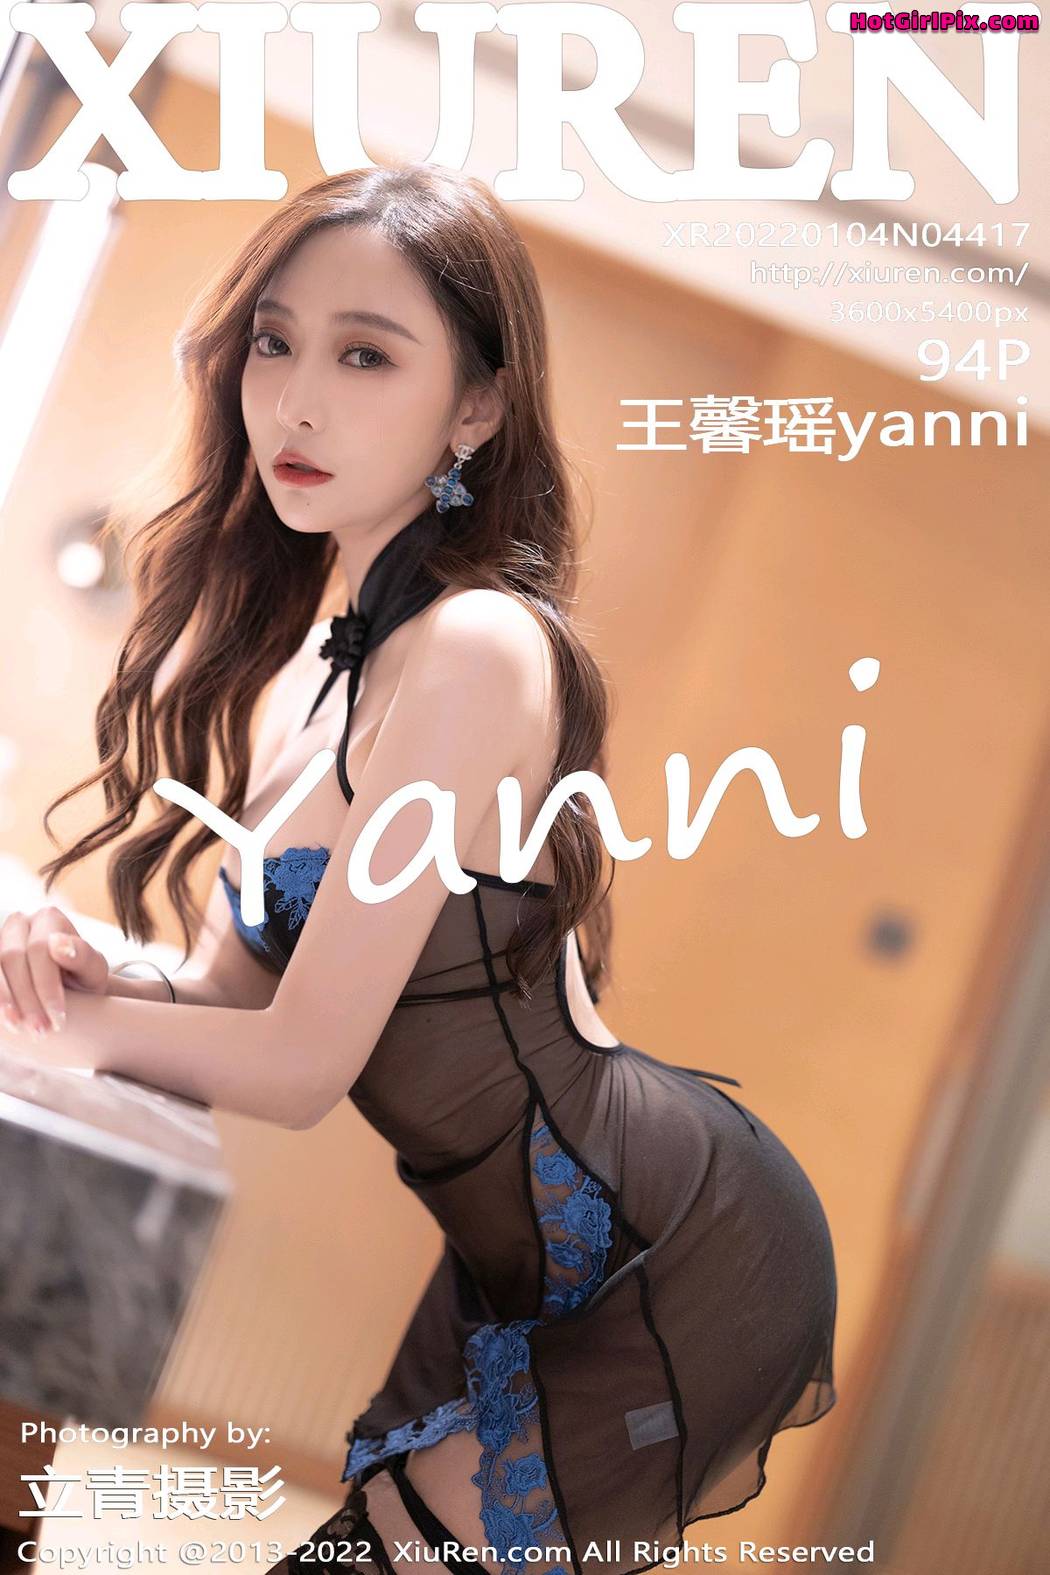 [XIUREN] No.4417 Wang Xin Yao 王馨瑶yanni Cover Photo